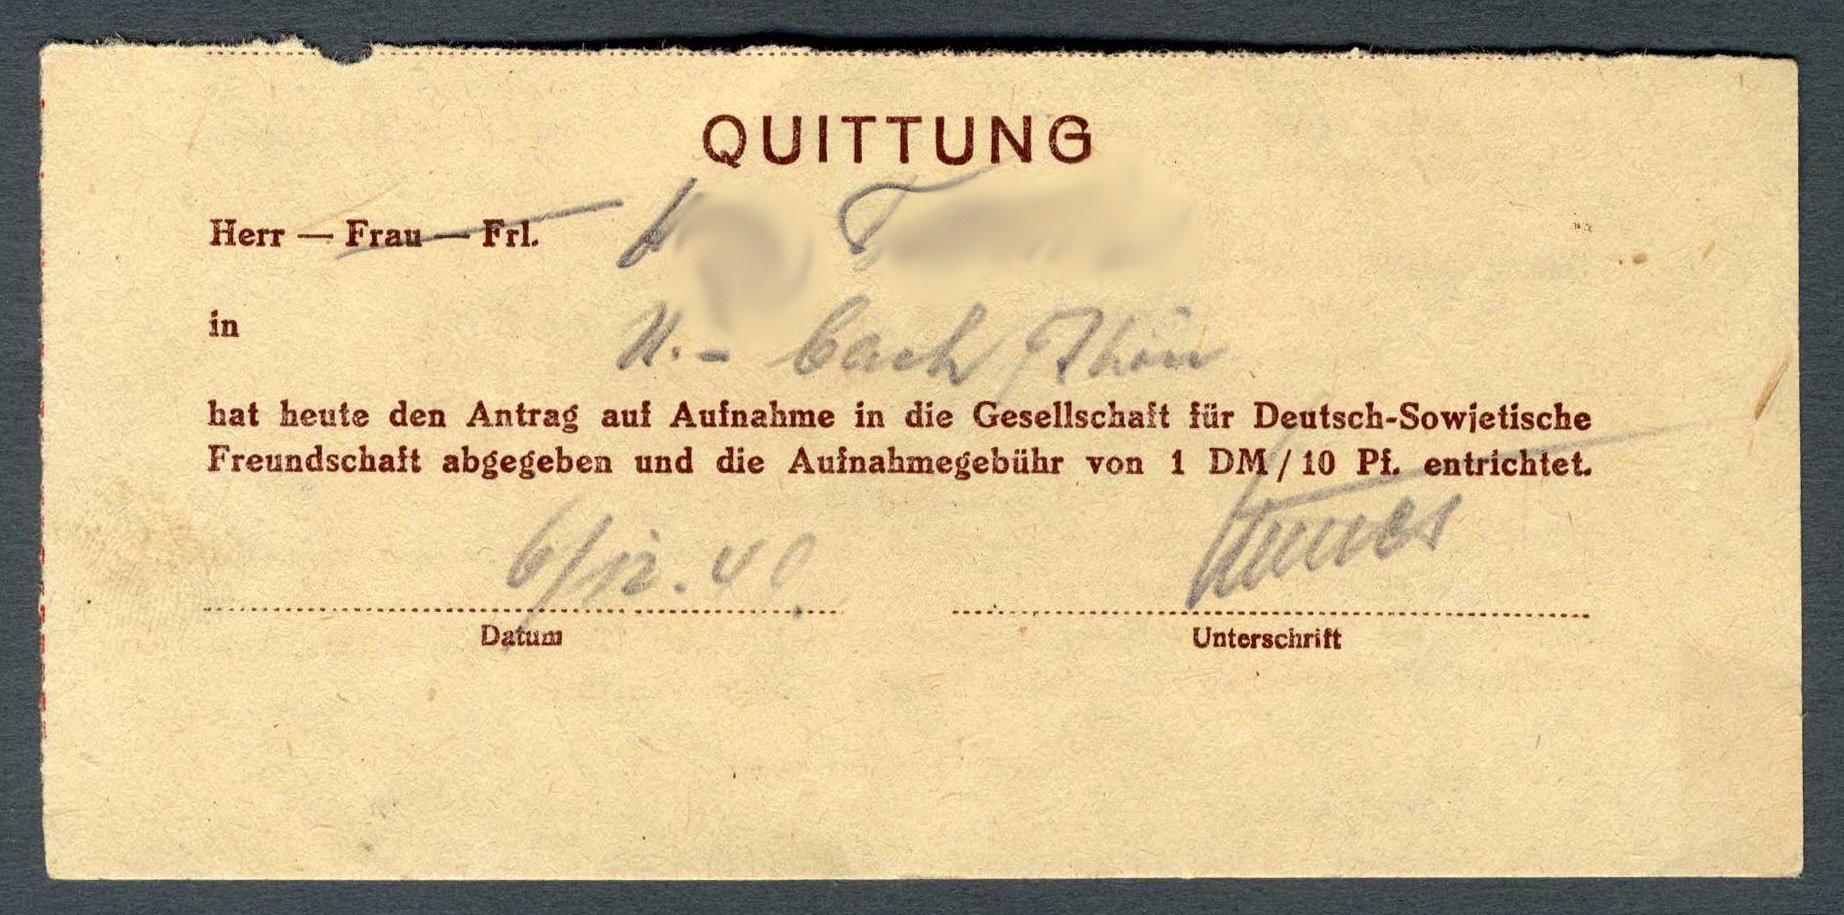 Quittung für Mitgliedsantrag 'Gesellschaft für Deutsch-Sowjetische Freundschaft' (Werra-Kalibergbau-Museum, Heringen/W. CC BY-NC-SA)